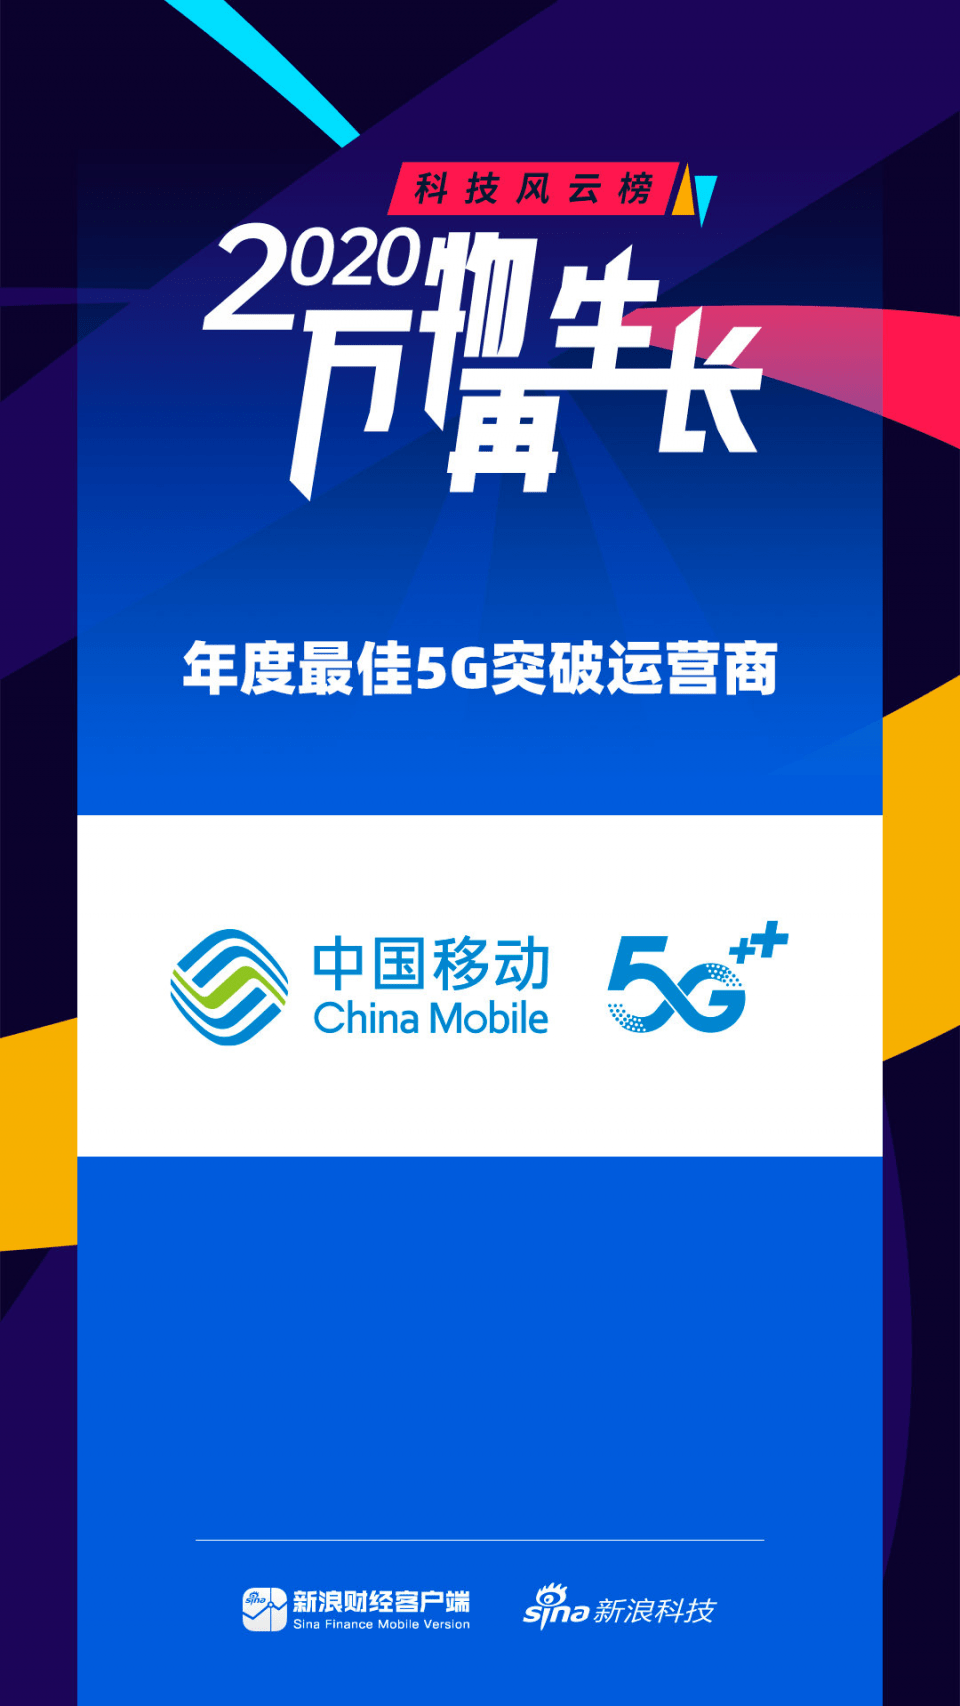 
中国移动获颁最佳5G突破运营商 网络、优惠、服务全面领先！_亚博yabo888vip官网网站(图1)